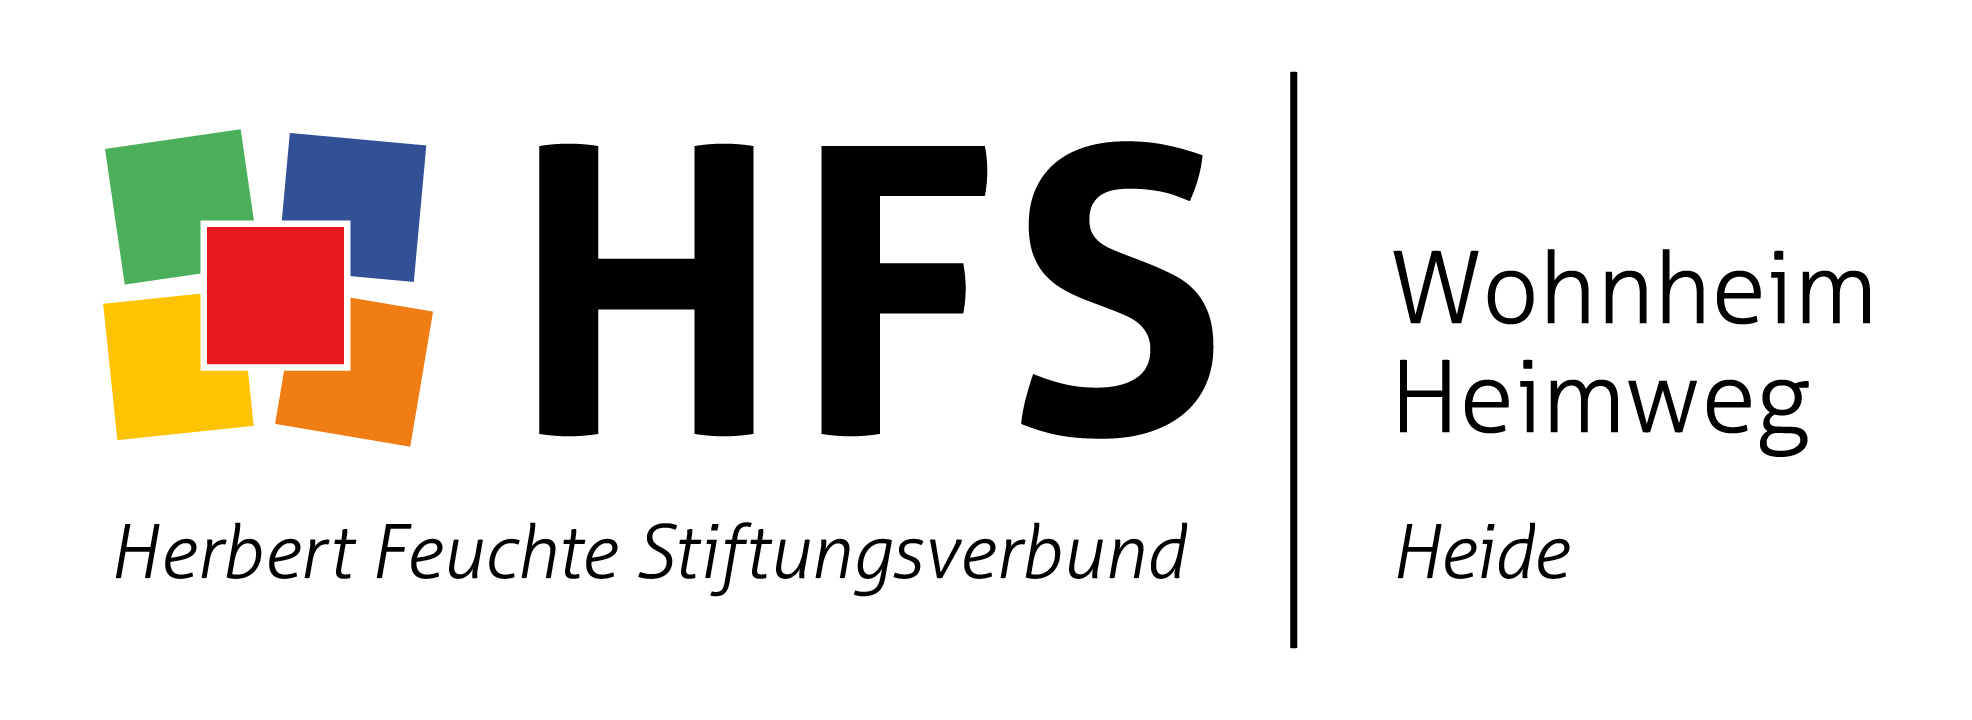 Logo: Herbert Feuchte Stiftungsverbund gGmbH